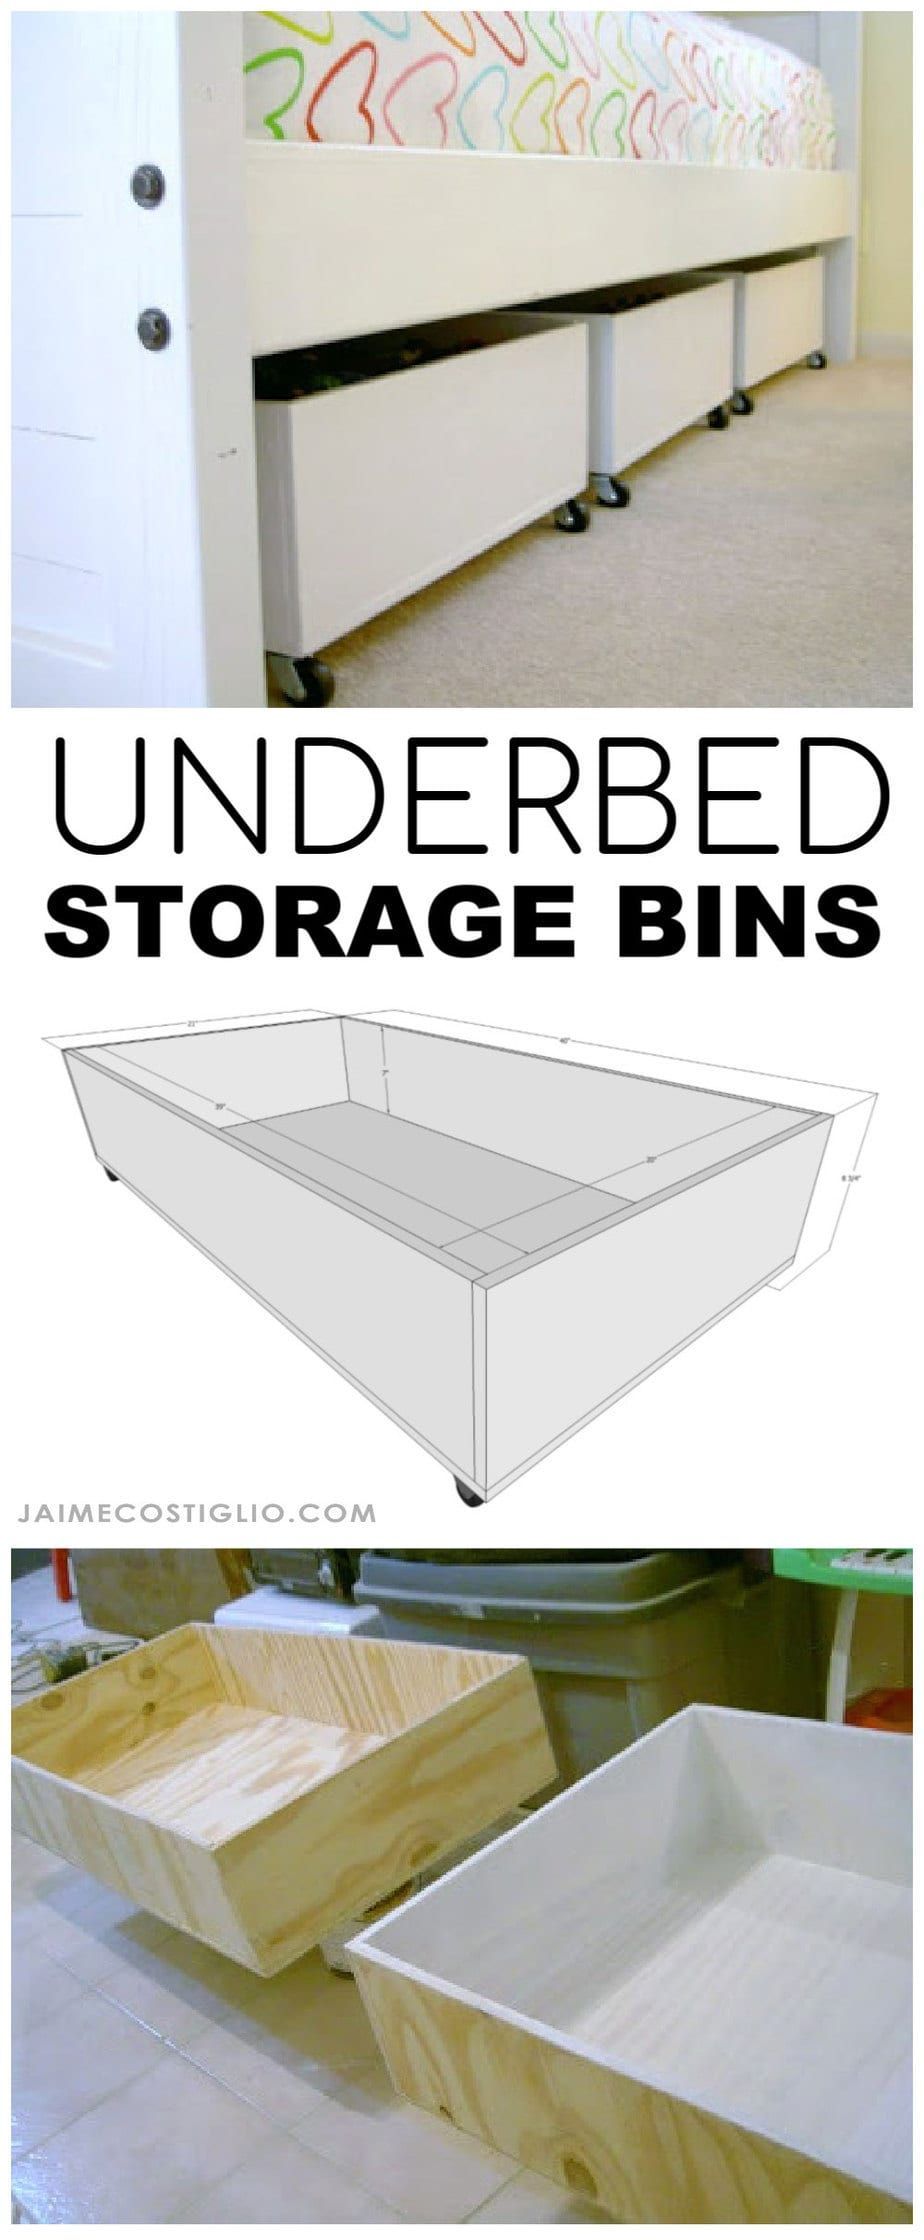 DIY Underbed Storage Bins from Plywood - Jaime Costiglio - DIY Underbed Storage Bins from Plywood - Jaime Costiglio -   15 diy 100 inspiration ideas